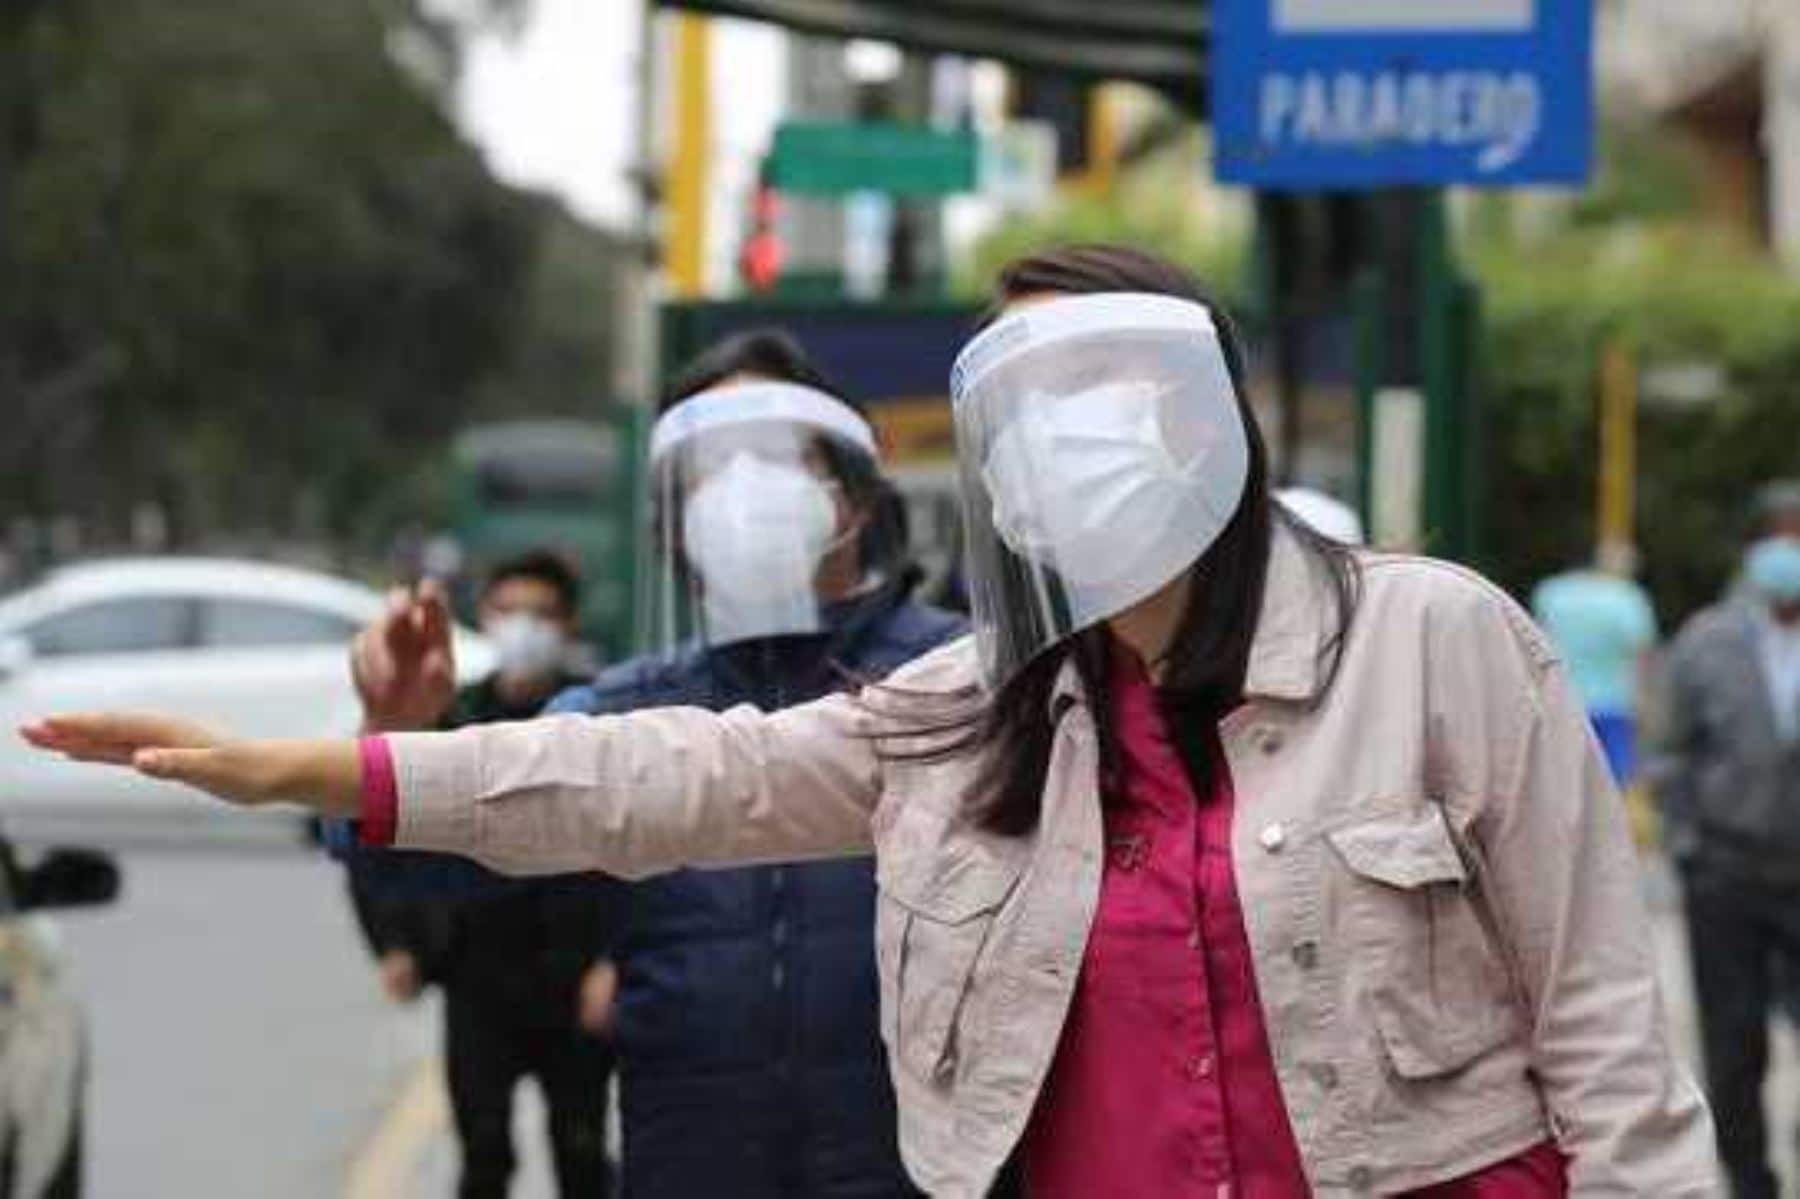 “Marcha blanca” para protectores faciales en transporte público